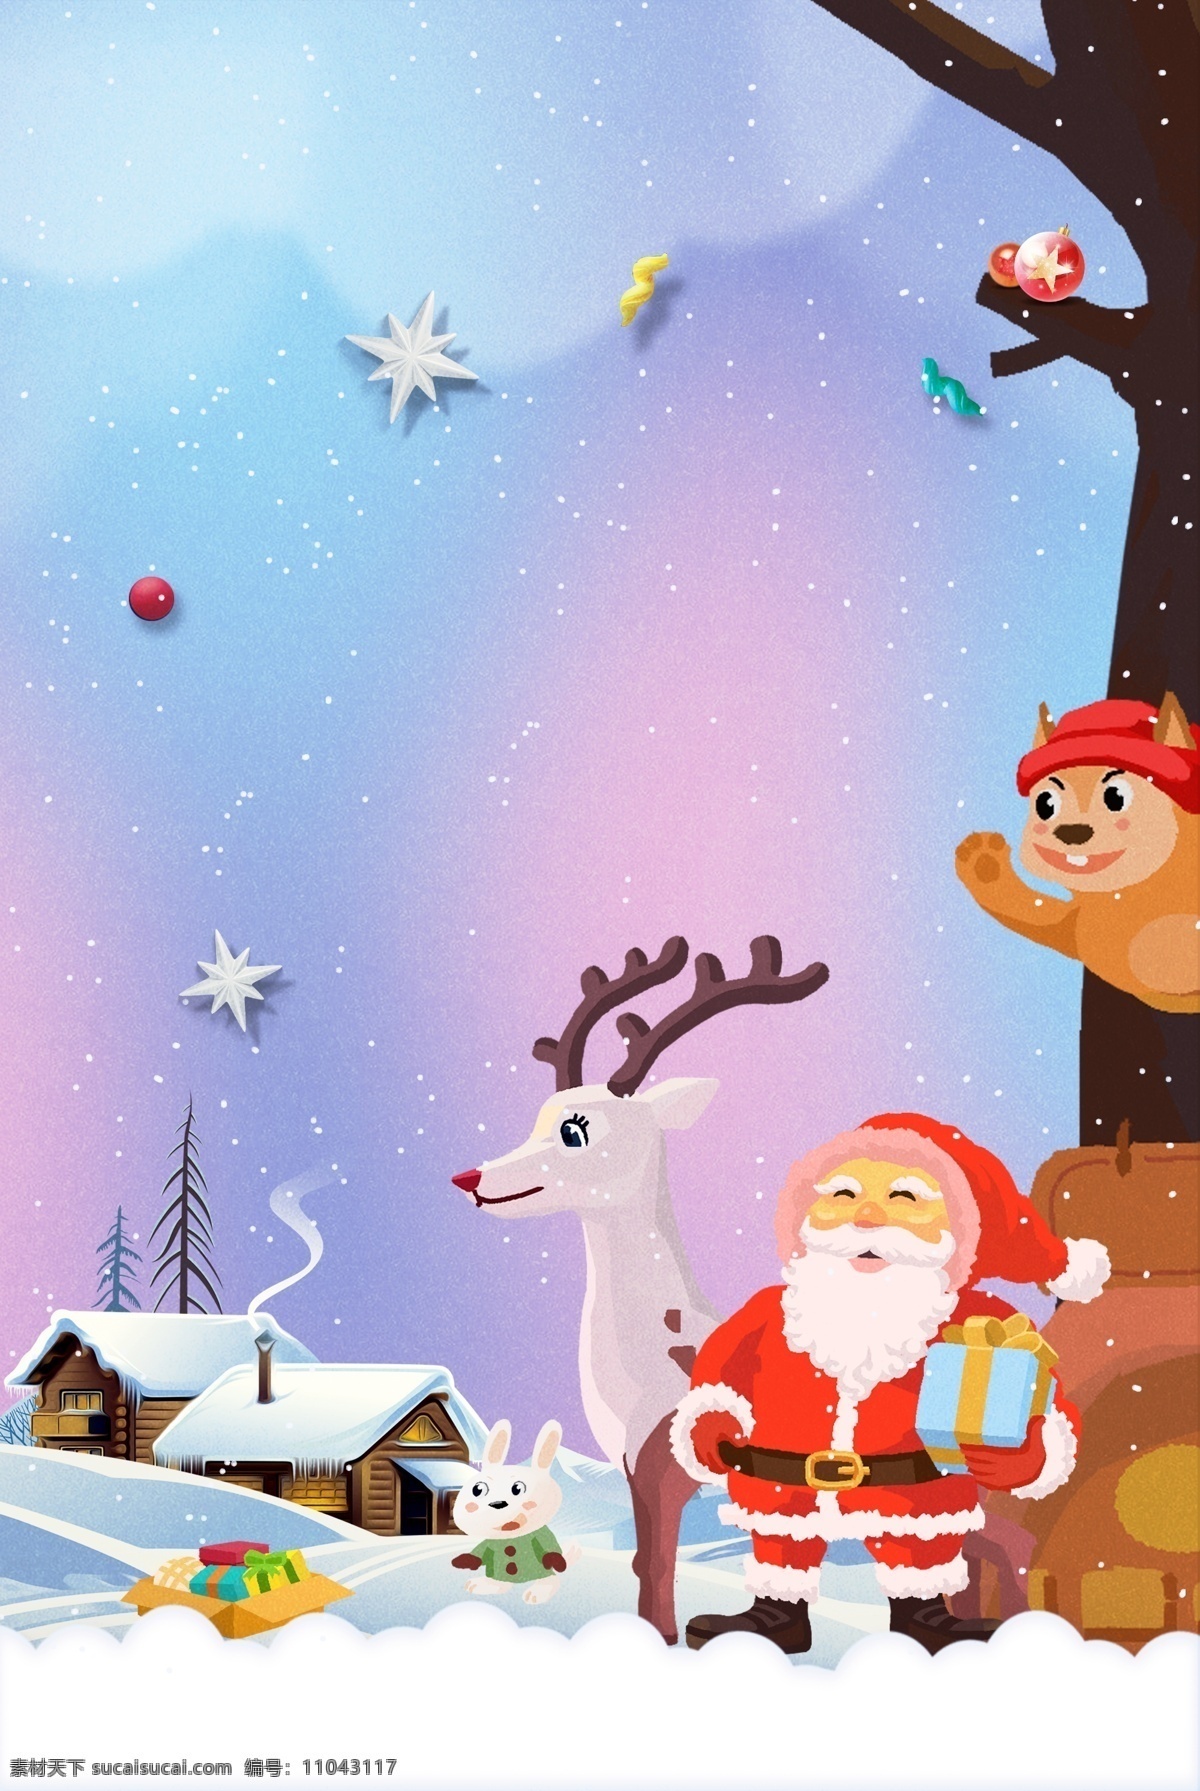 紫色 圣诞节 促销 卡通 广告 背景 图 梦幻 可爱 城市 房子 手绘 圣诞老人 麋鹿 礼物 雪花 剪纸风 广告背景